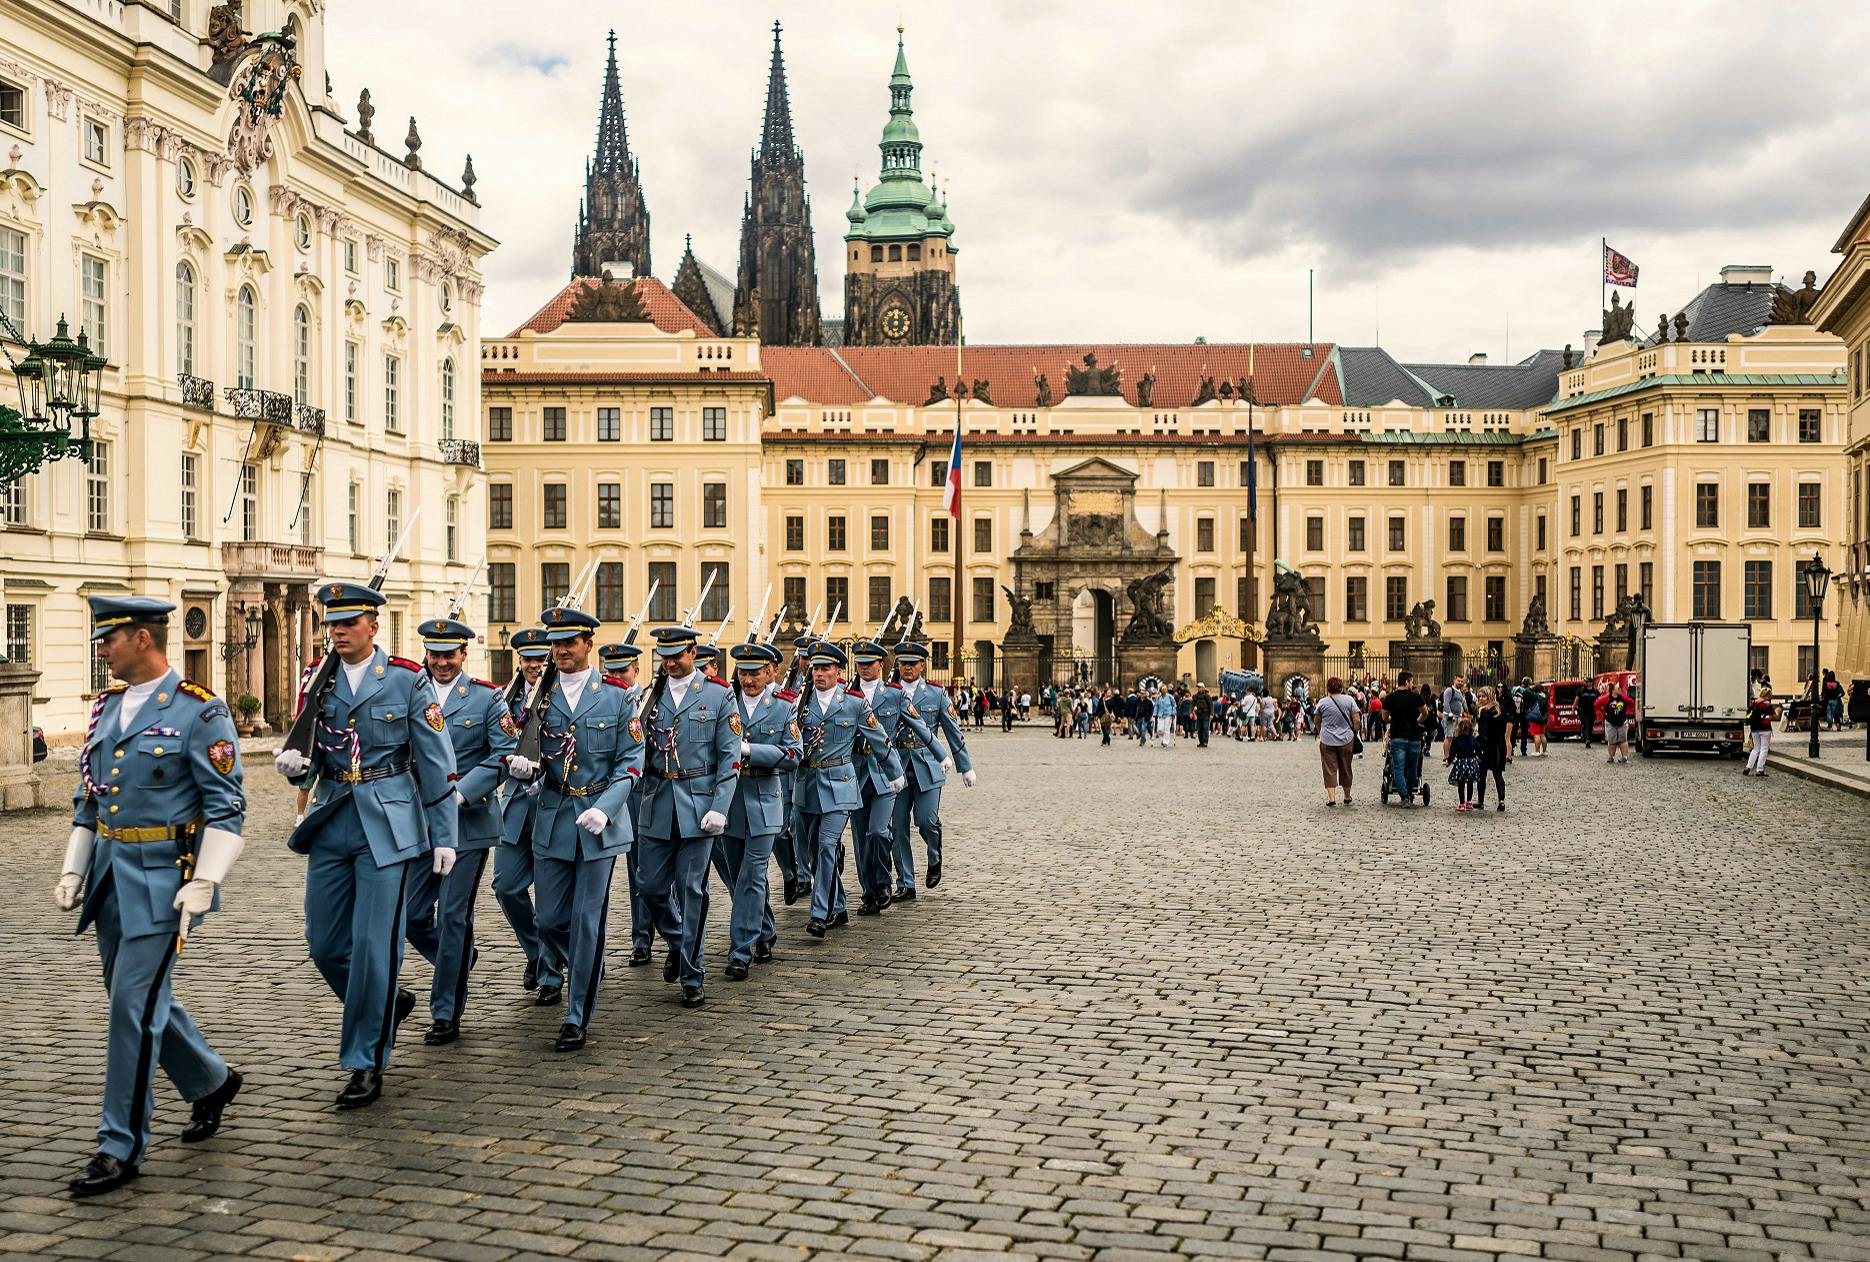 Visite de présentation du château de Prague avec billets coupe-file